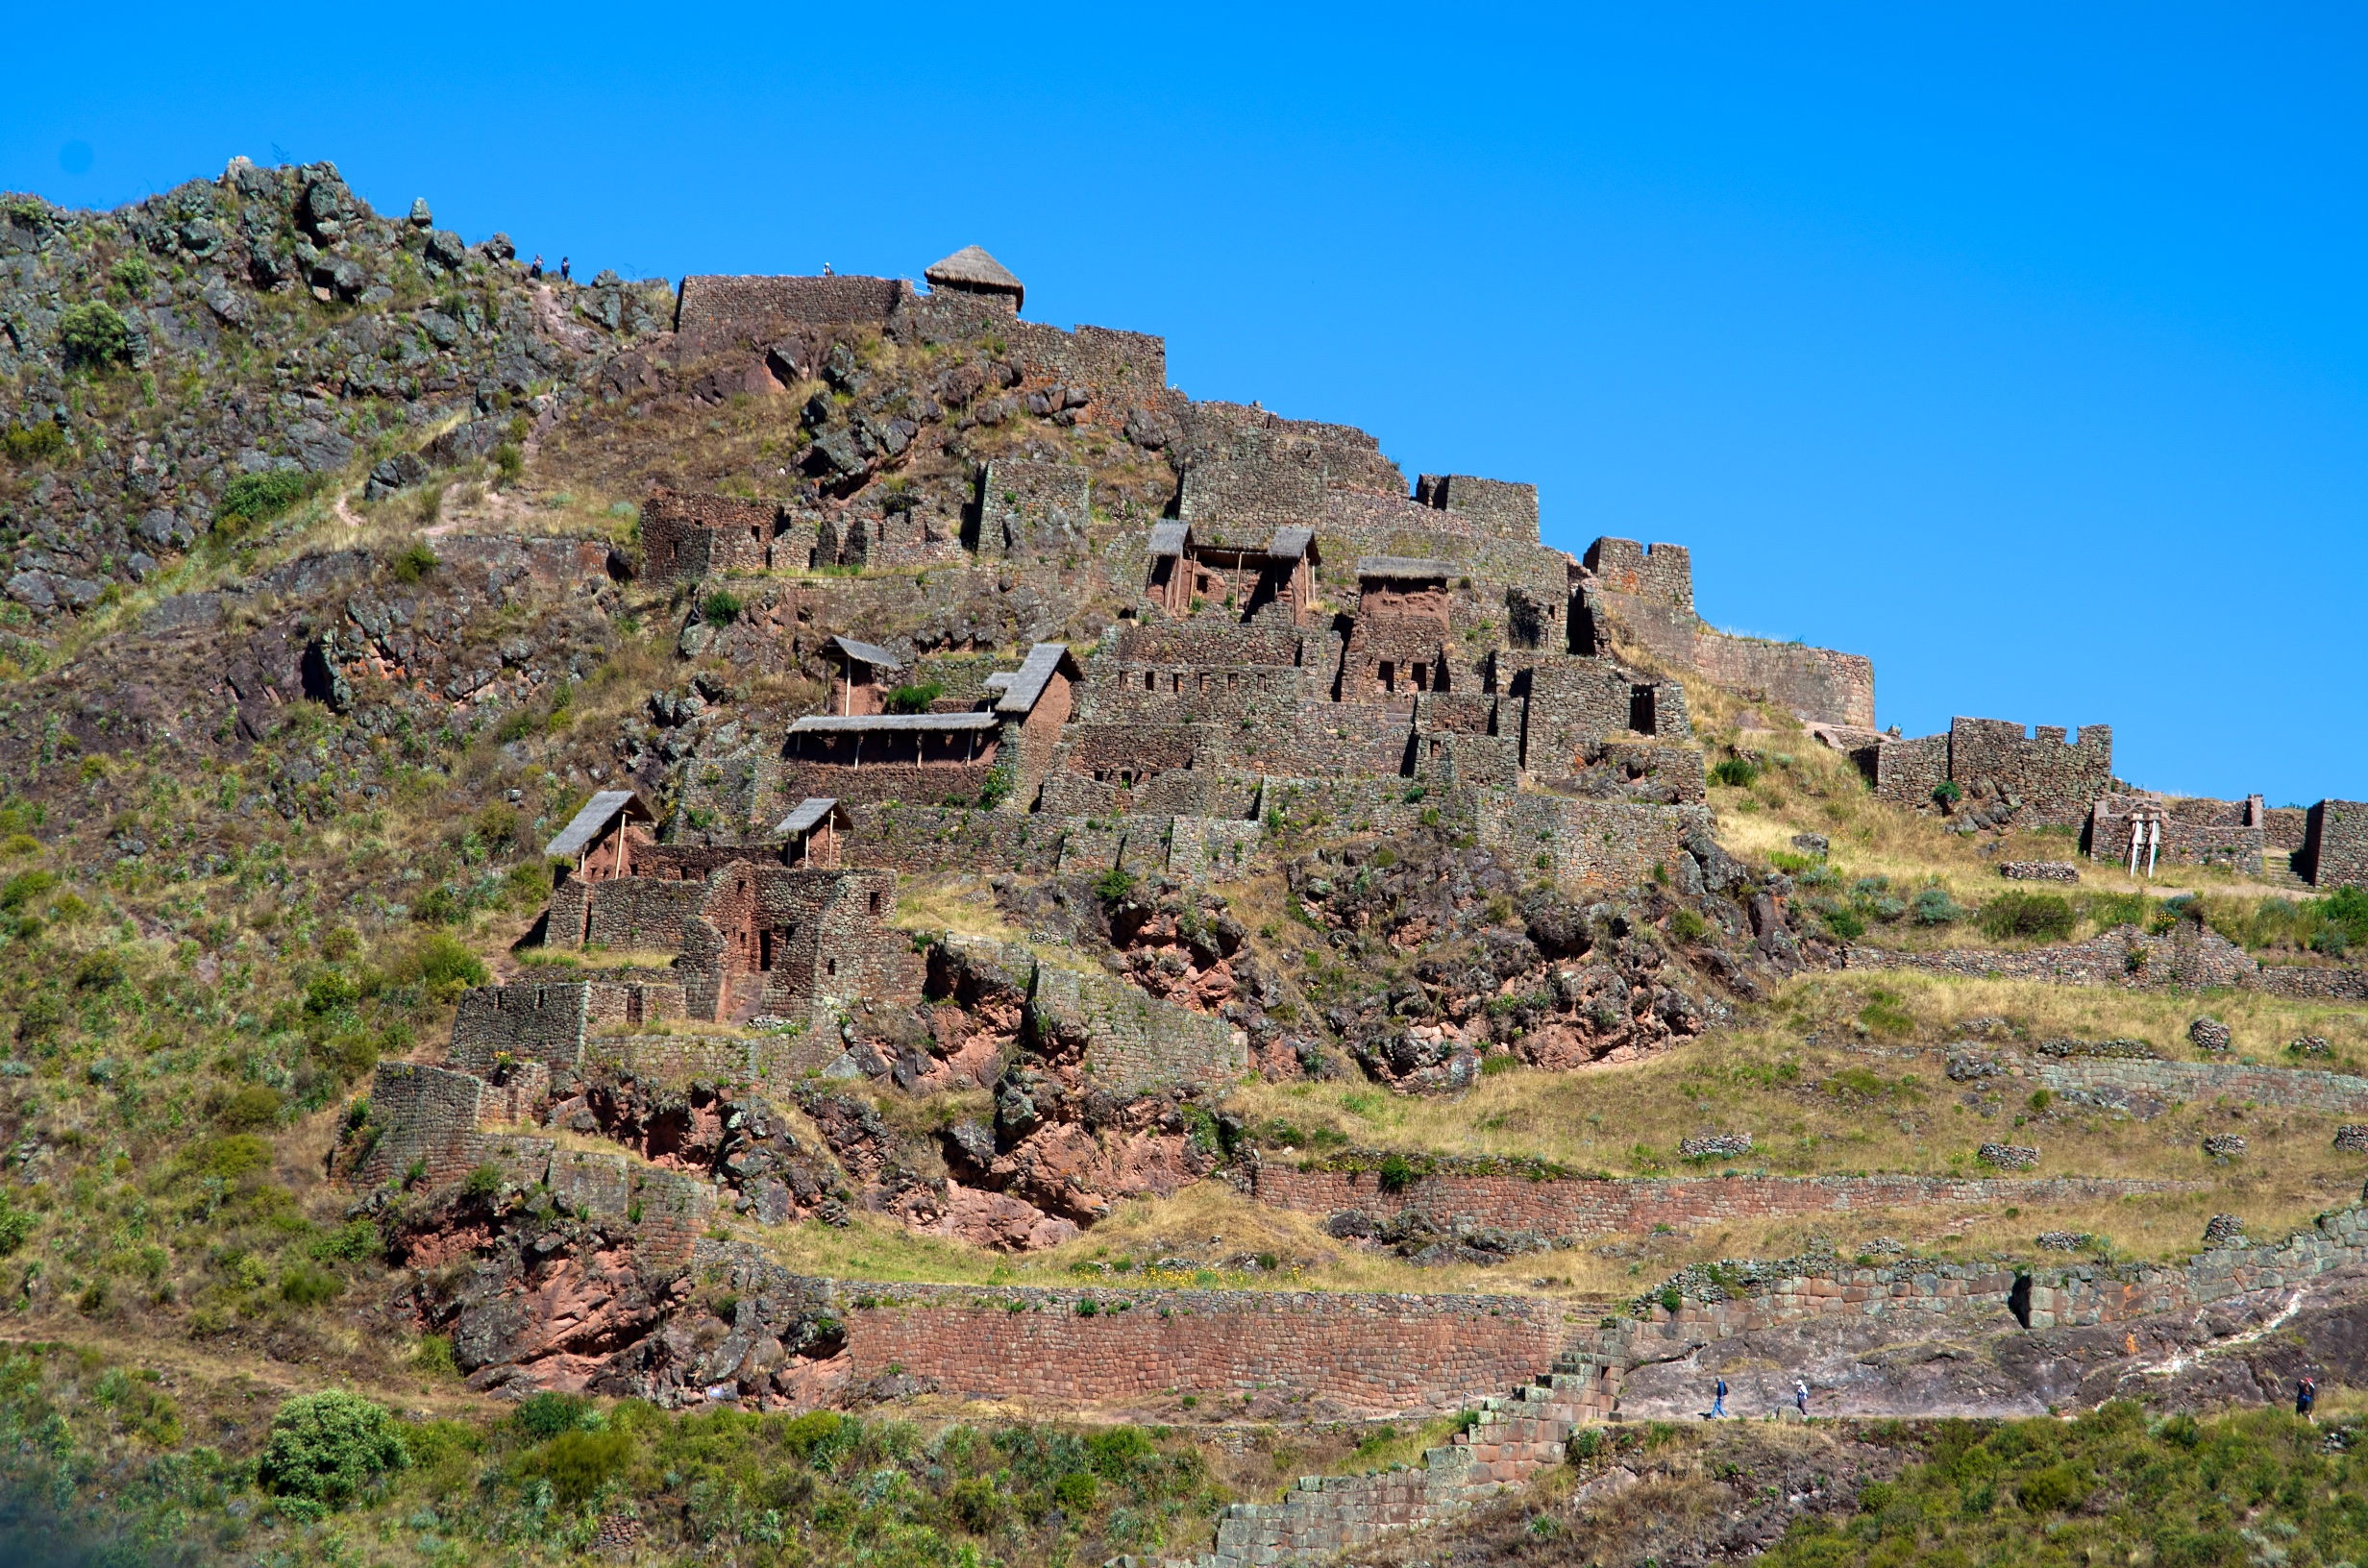  Pisac Ruins, Sacred Valley of the Incas, Peru 